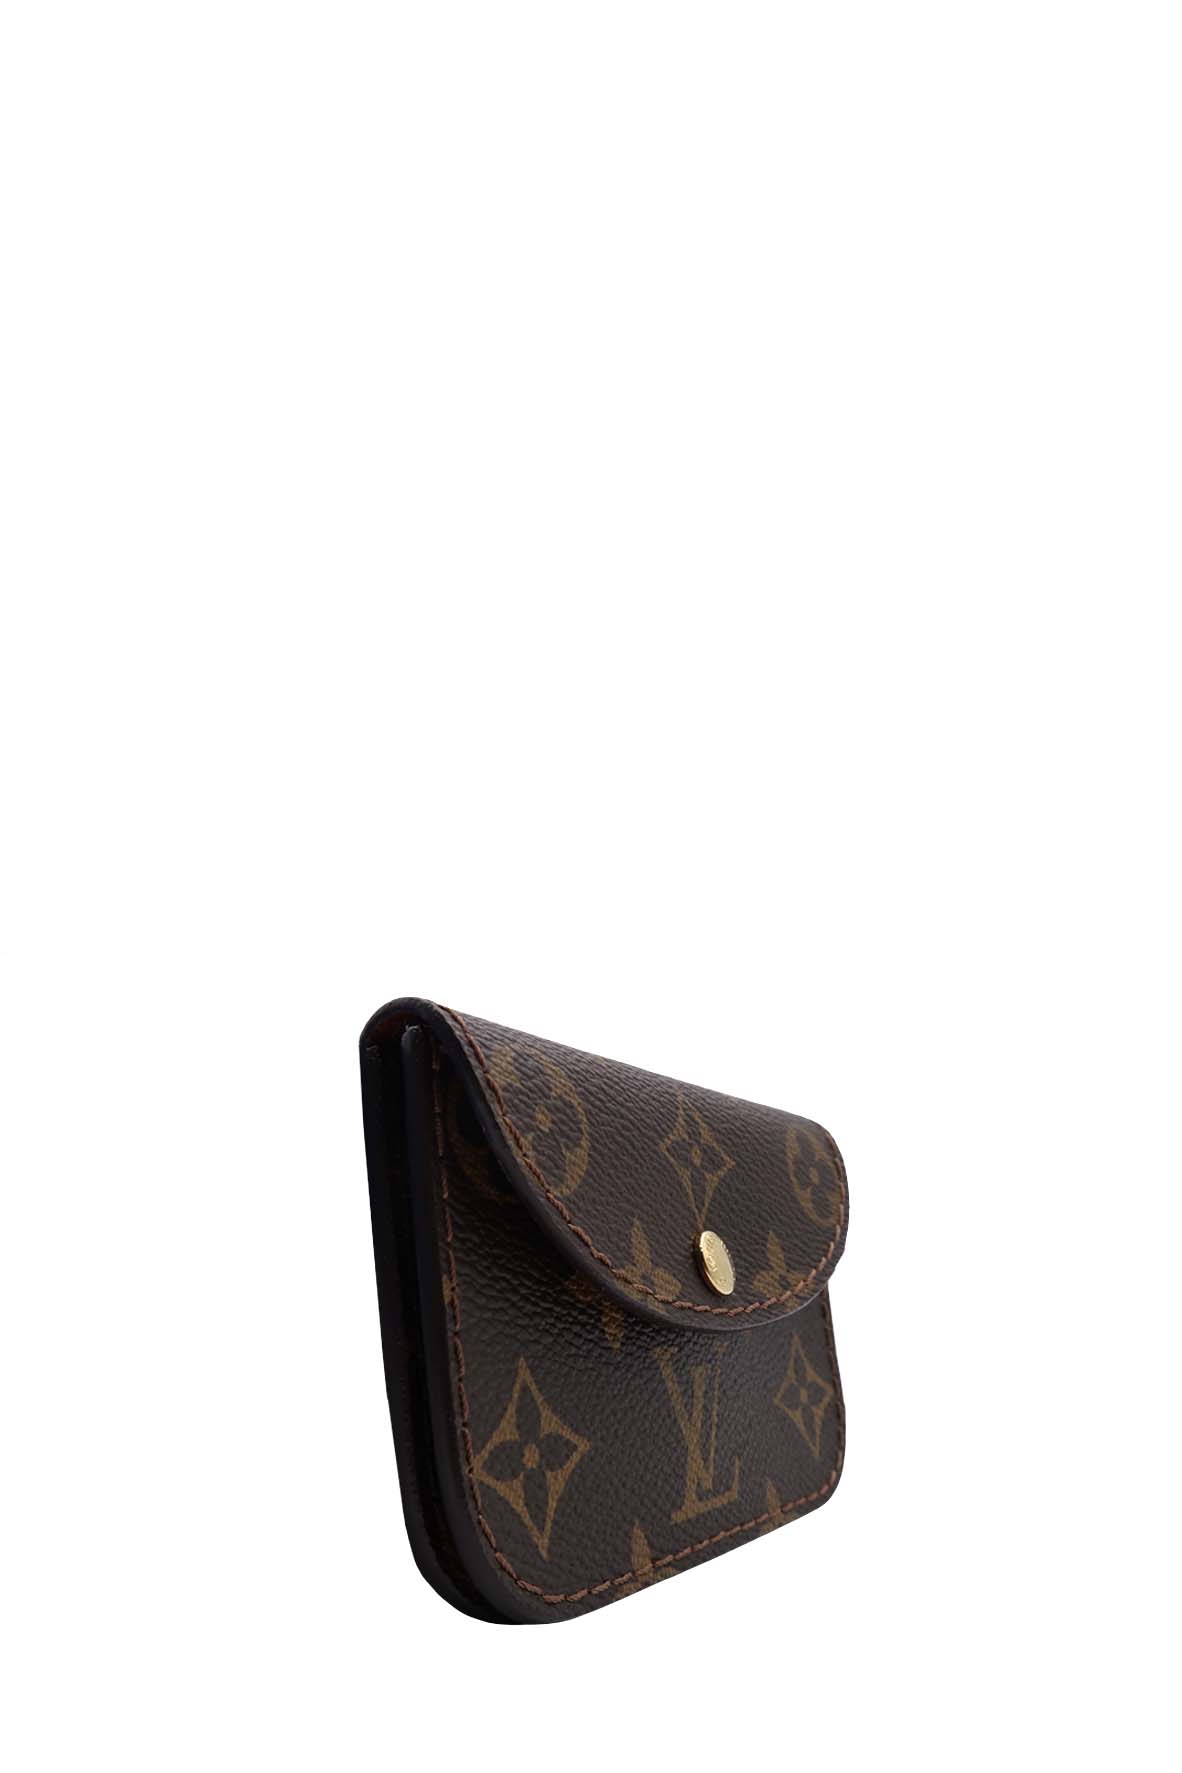 Louis Vuitton 2006 pre-owned monogram Ceinture Pochette belt bag - ShopStyle